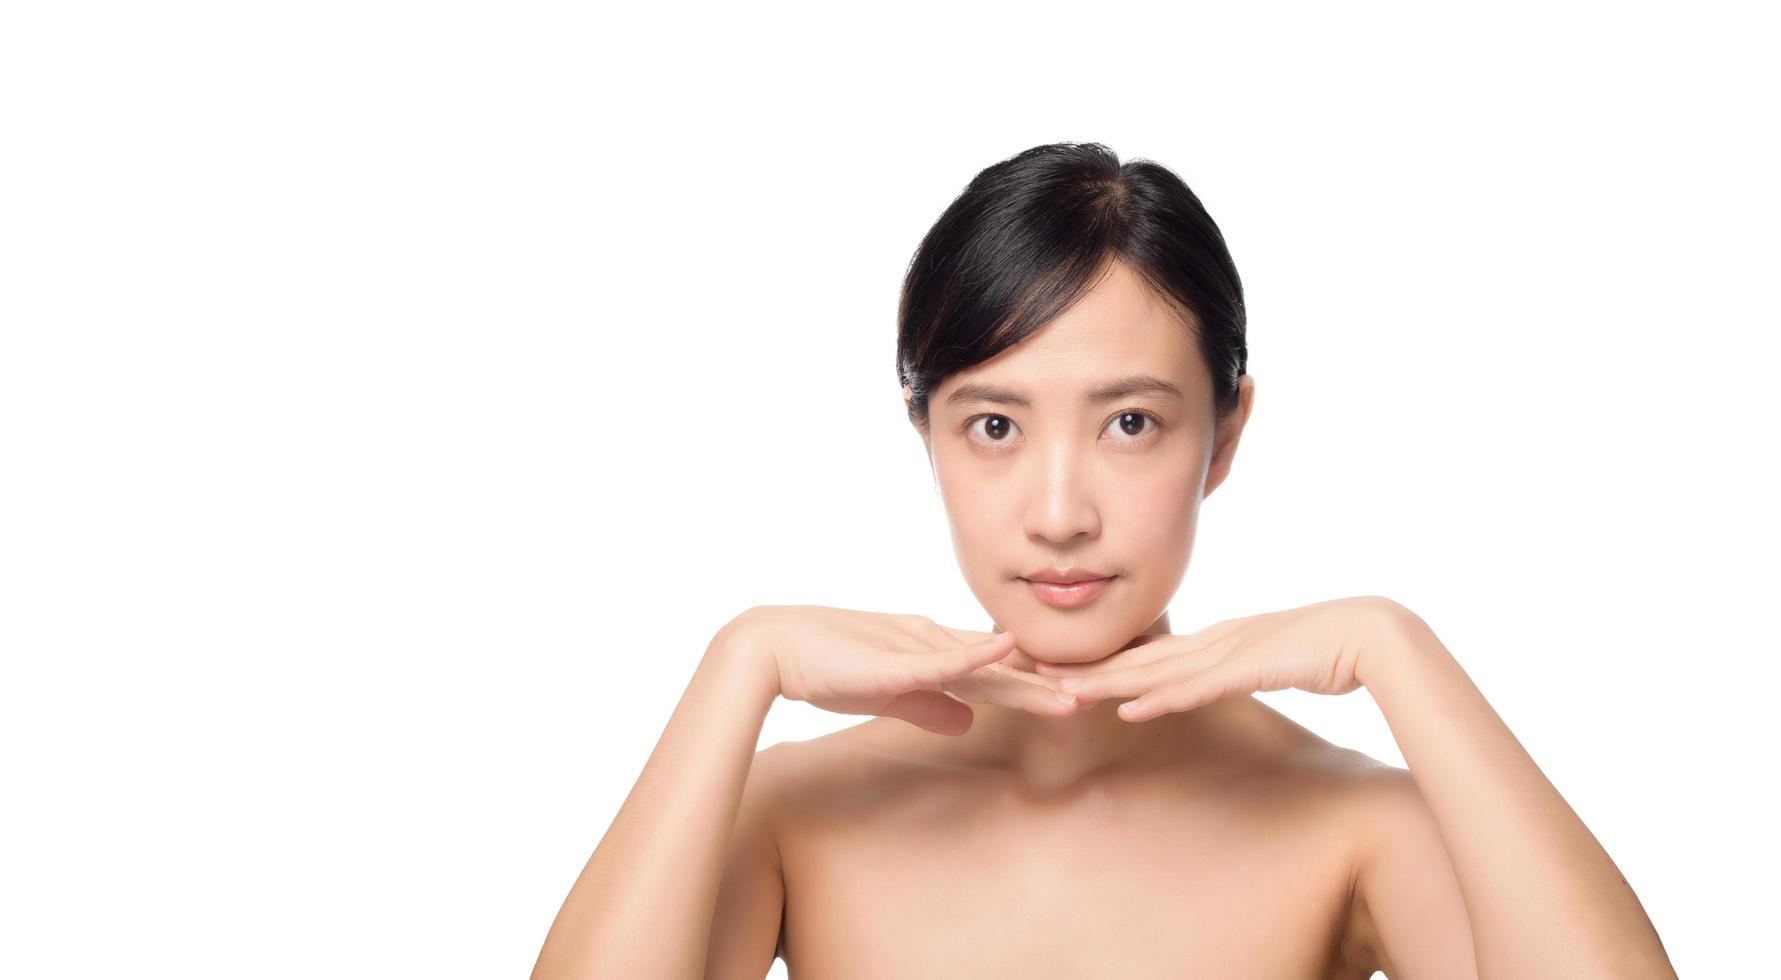 retrato do conceito de pele nua fresca limpa bonita jovem mulher asiática. menina asiática beleza rosto skincare e saúde bem-estar, tratamento facial, pele perfeita, maquiagem natural em fundo branco foto